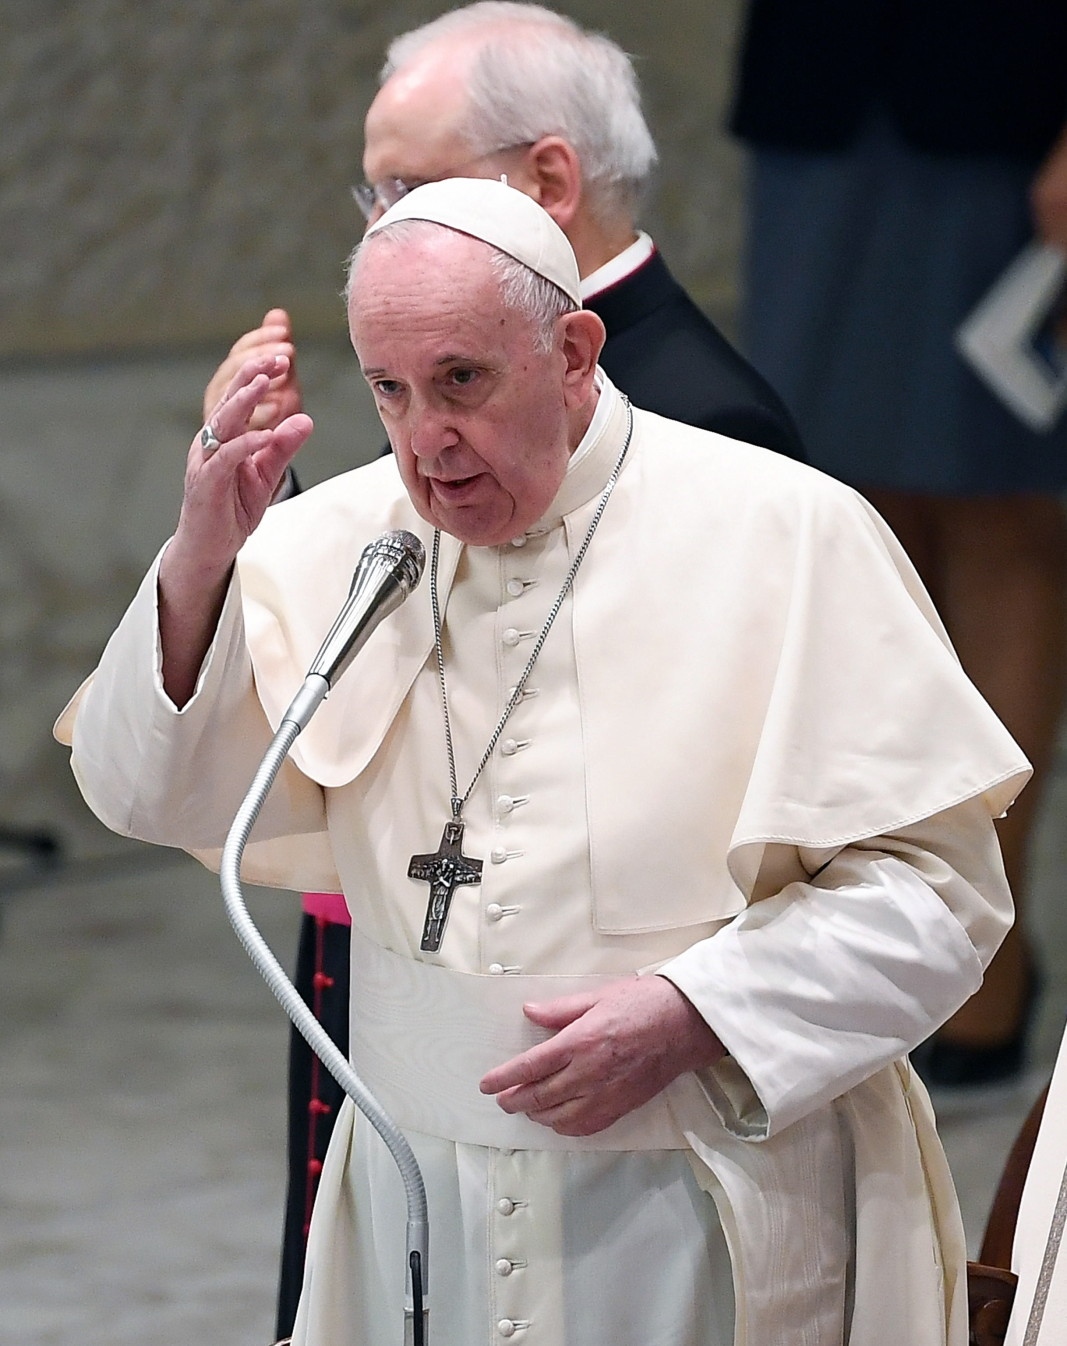 Папа Франциск ще участва в тазгодишната среща на лидерите от